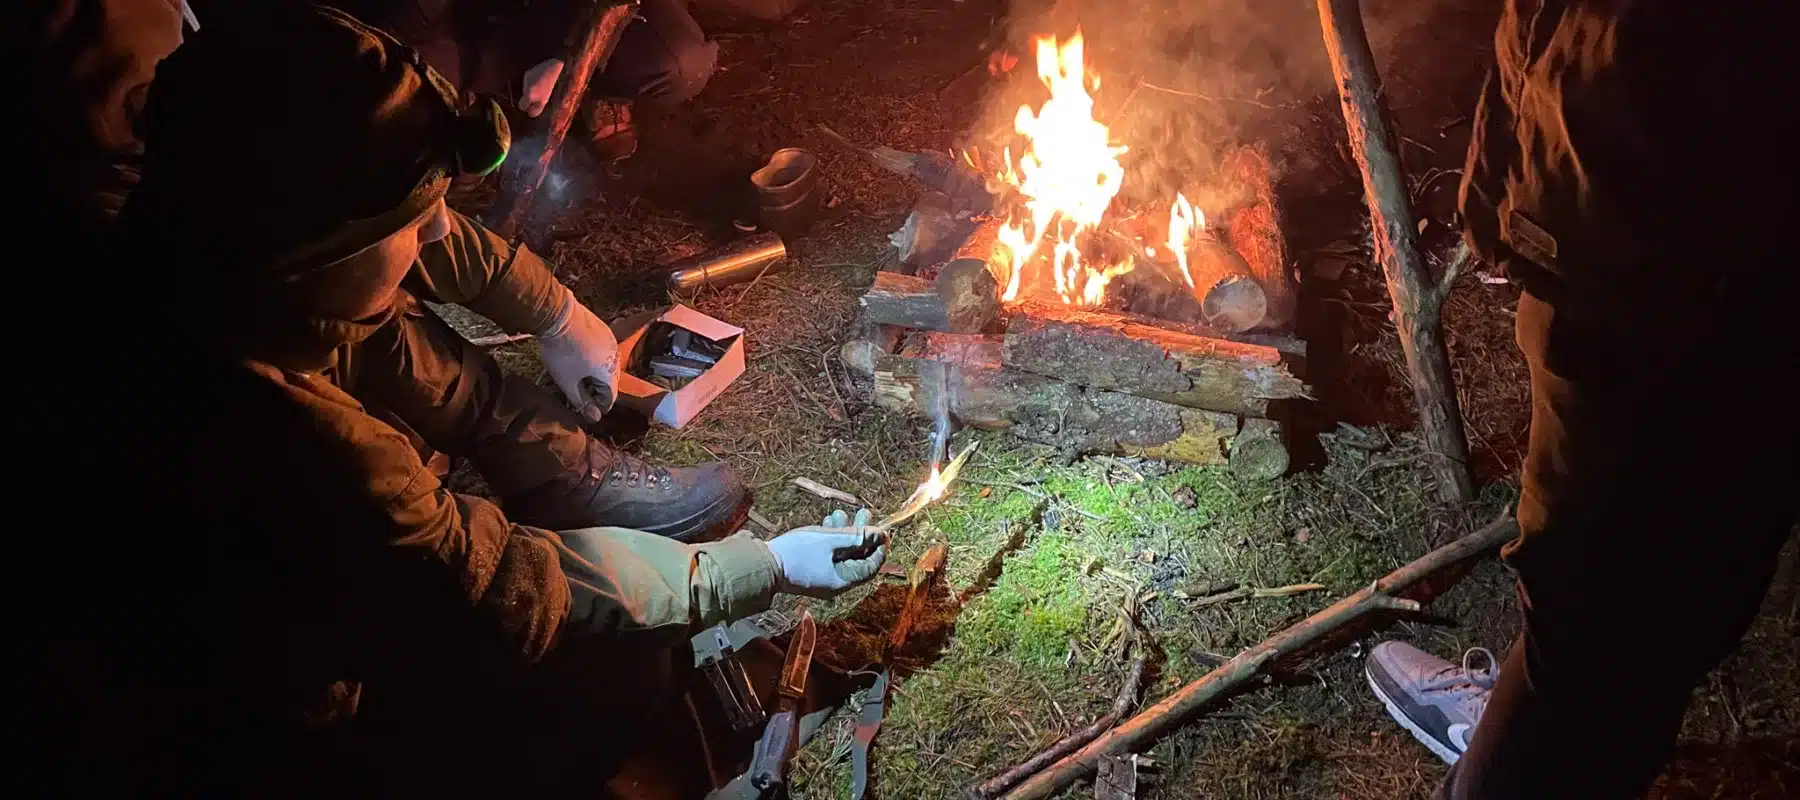 Instruktor survivalu pokazuje rozpalanie z ogniskiem studnia